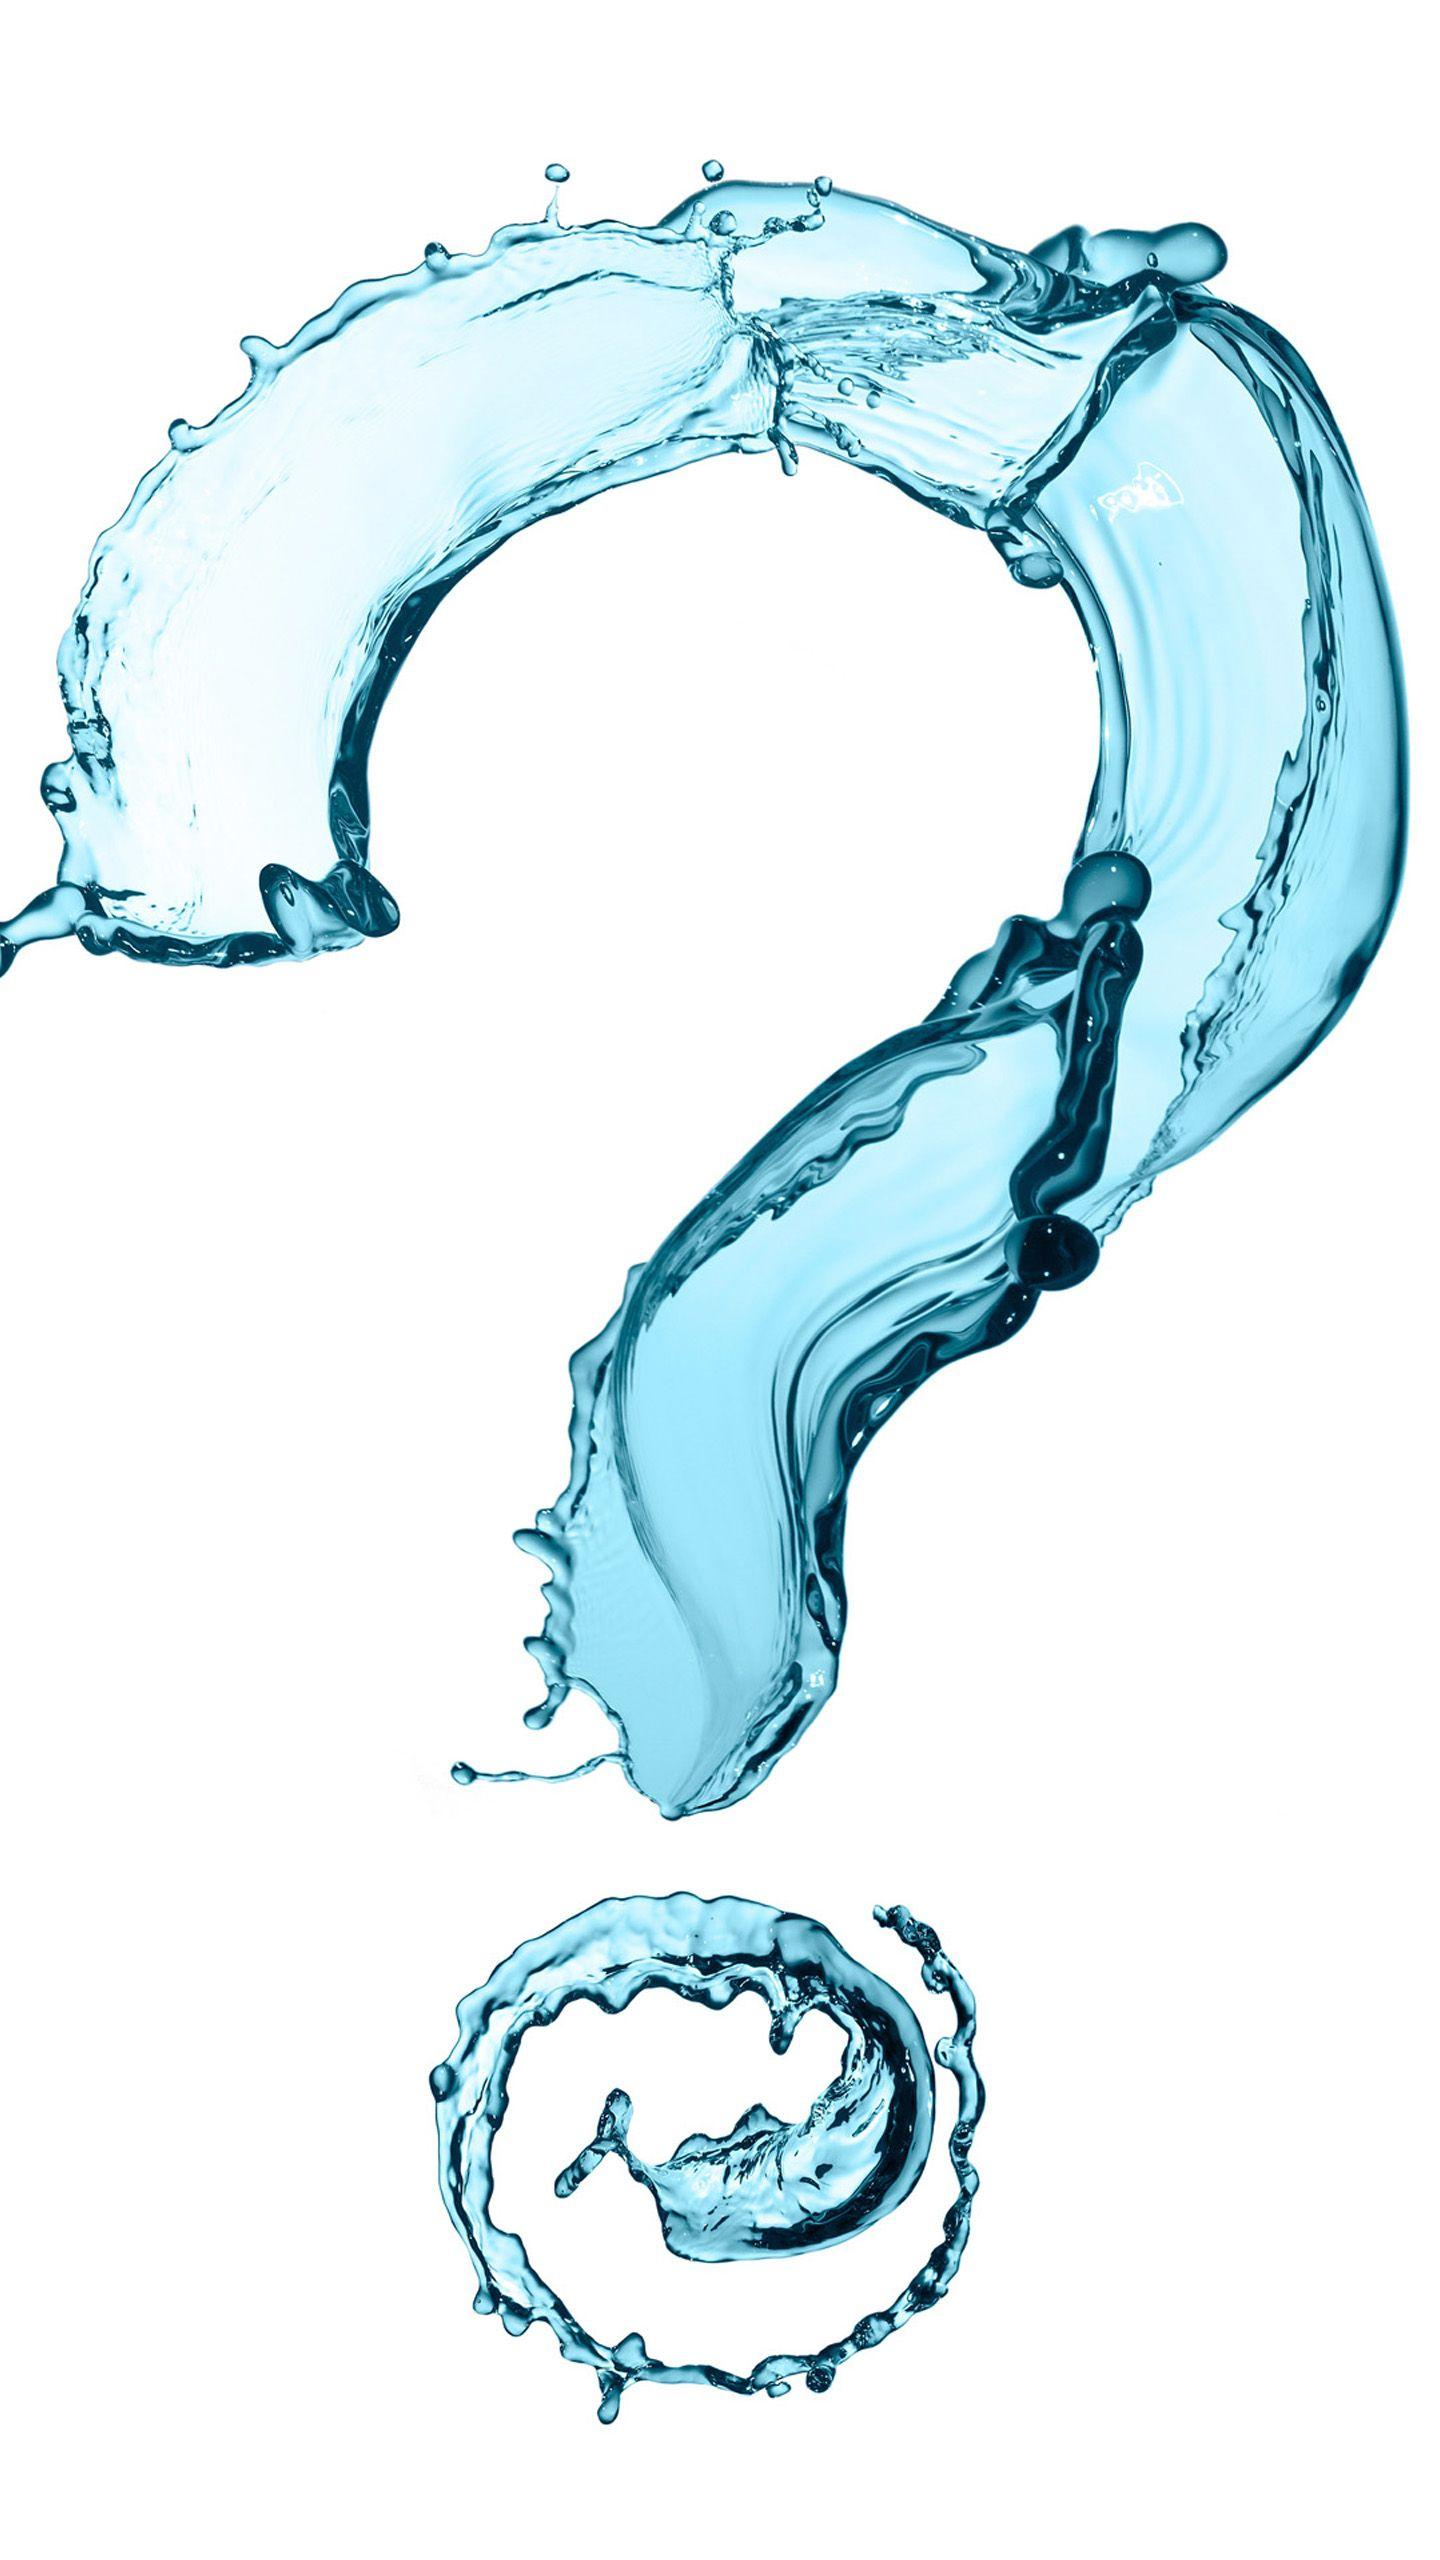 Creative Water question mark Nexus 6 Wallpaper, Nexus 6